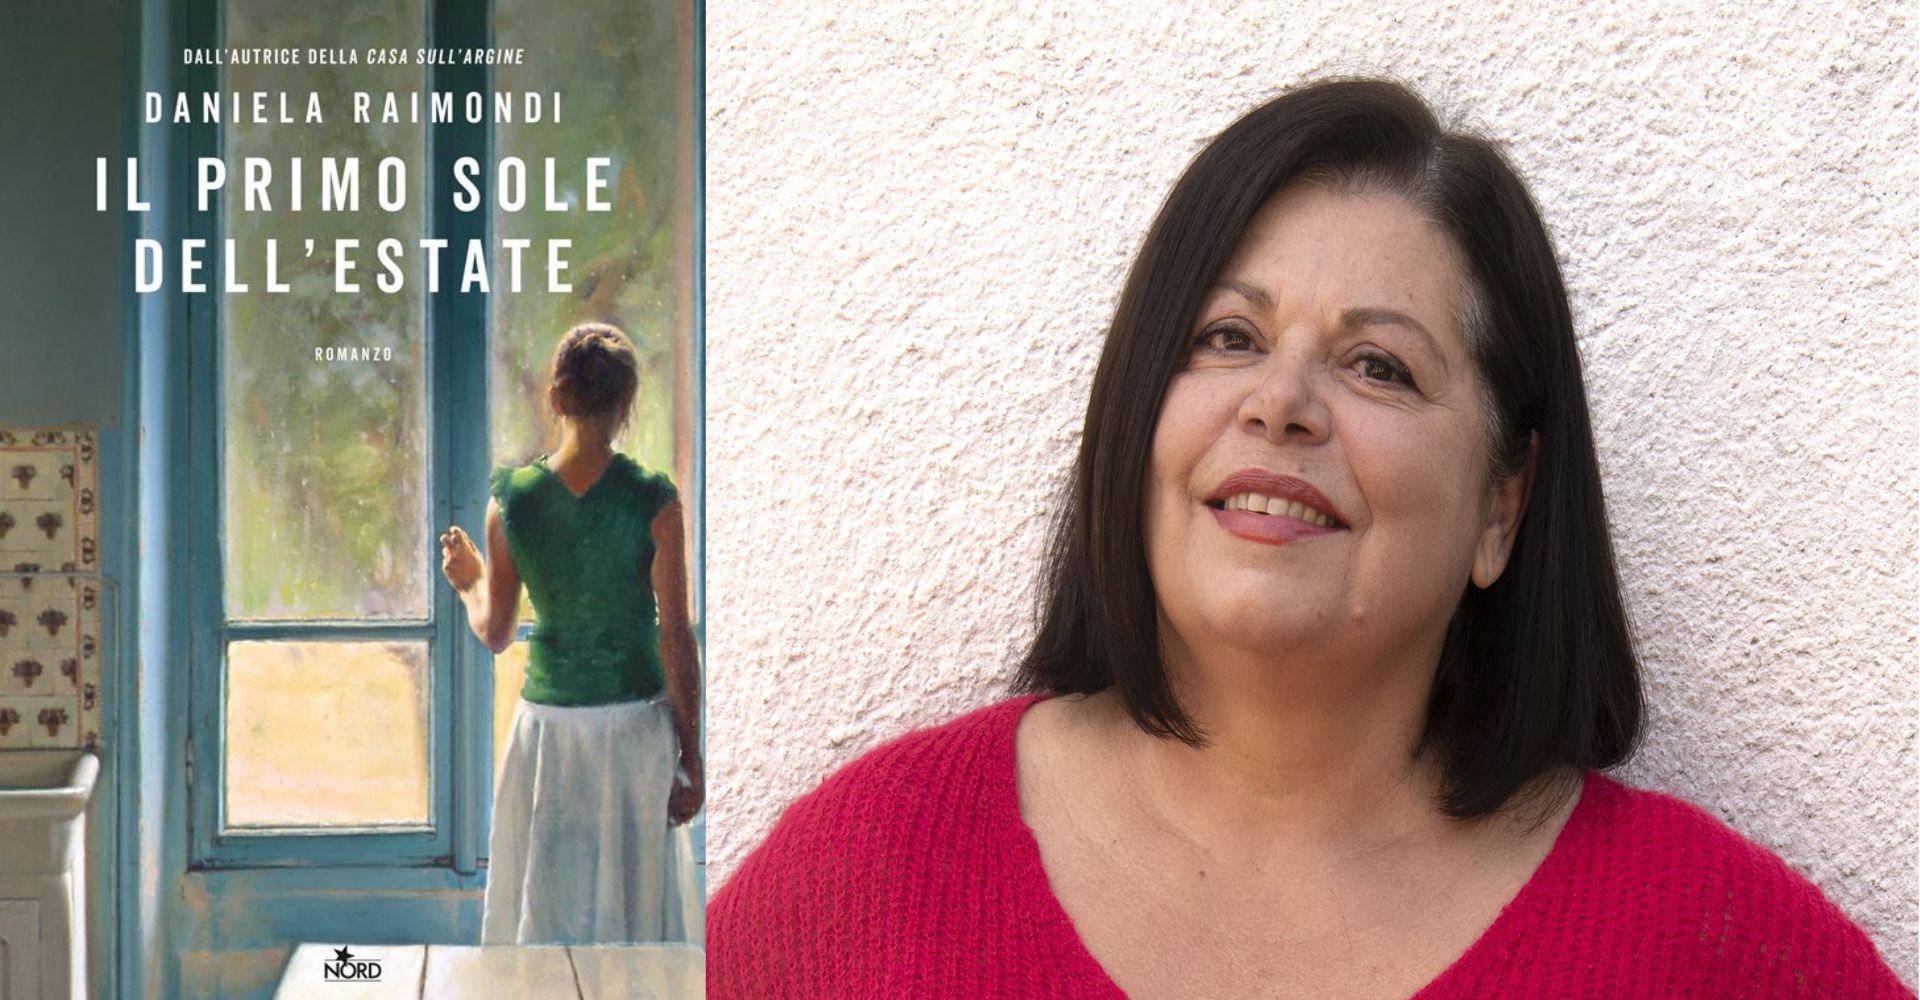 "Il primo sole dell'estate" di Daniela Raimondi: da non perdere il ritorno dell'autrice del bestseller "La casa sull'argine"